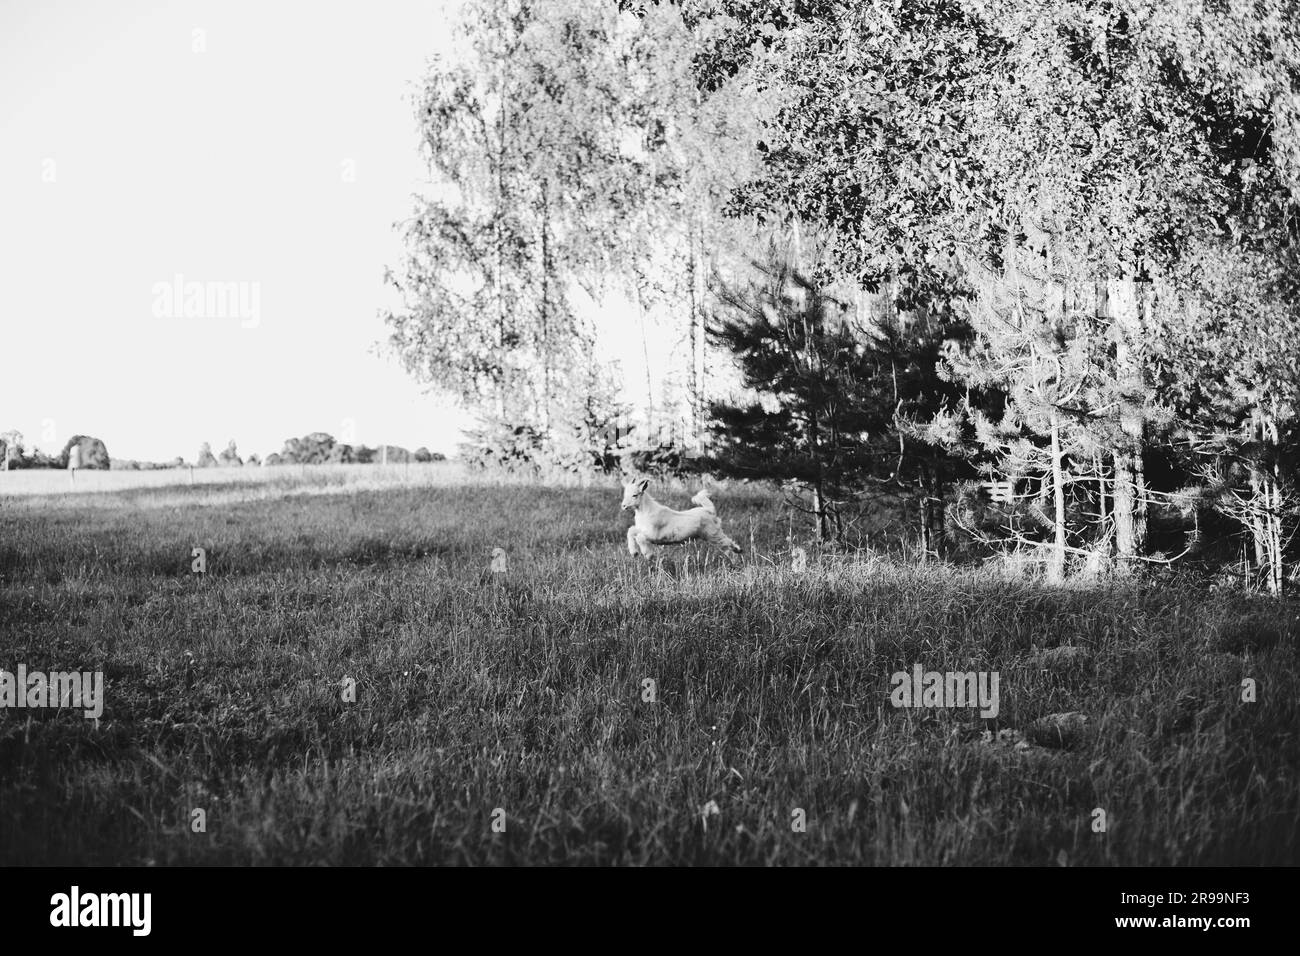 la chèvre blanche avec des cornes dans l'herbe verte à la lumière d'un coucher de soleil d'été court à travers la prairie sautant. Banque D'Images